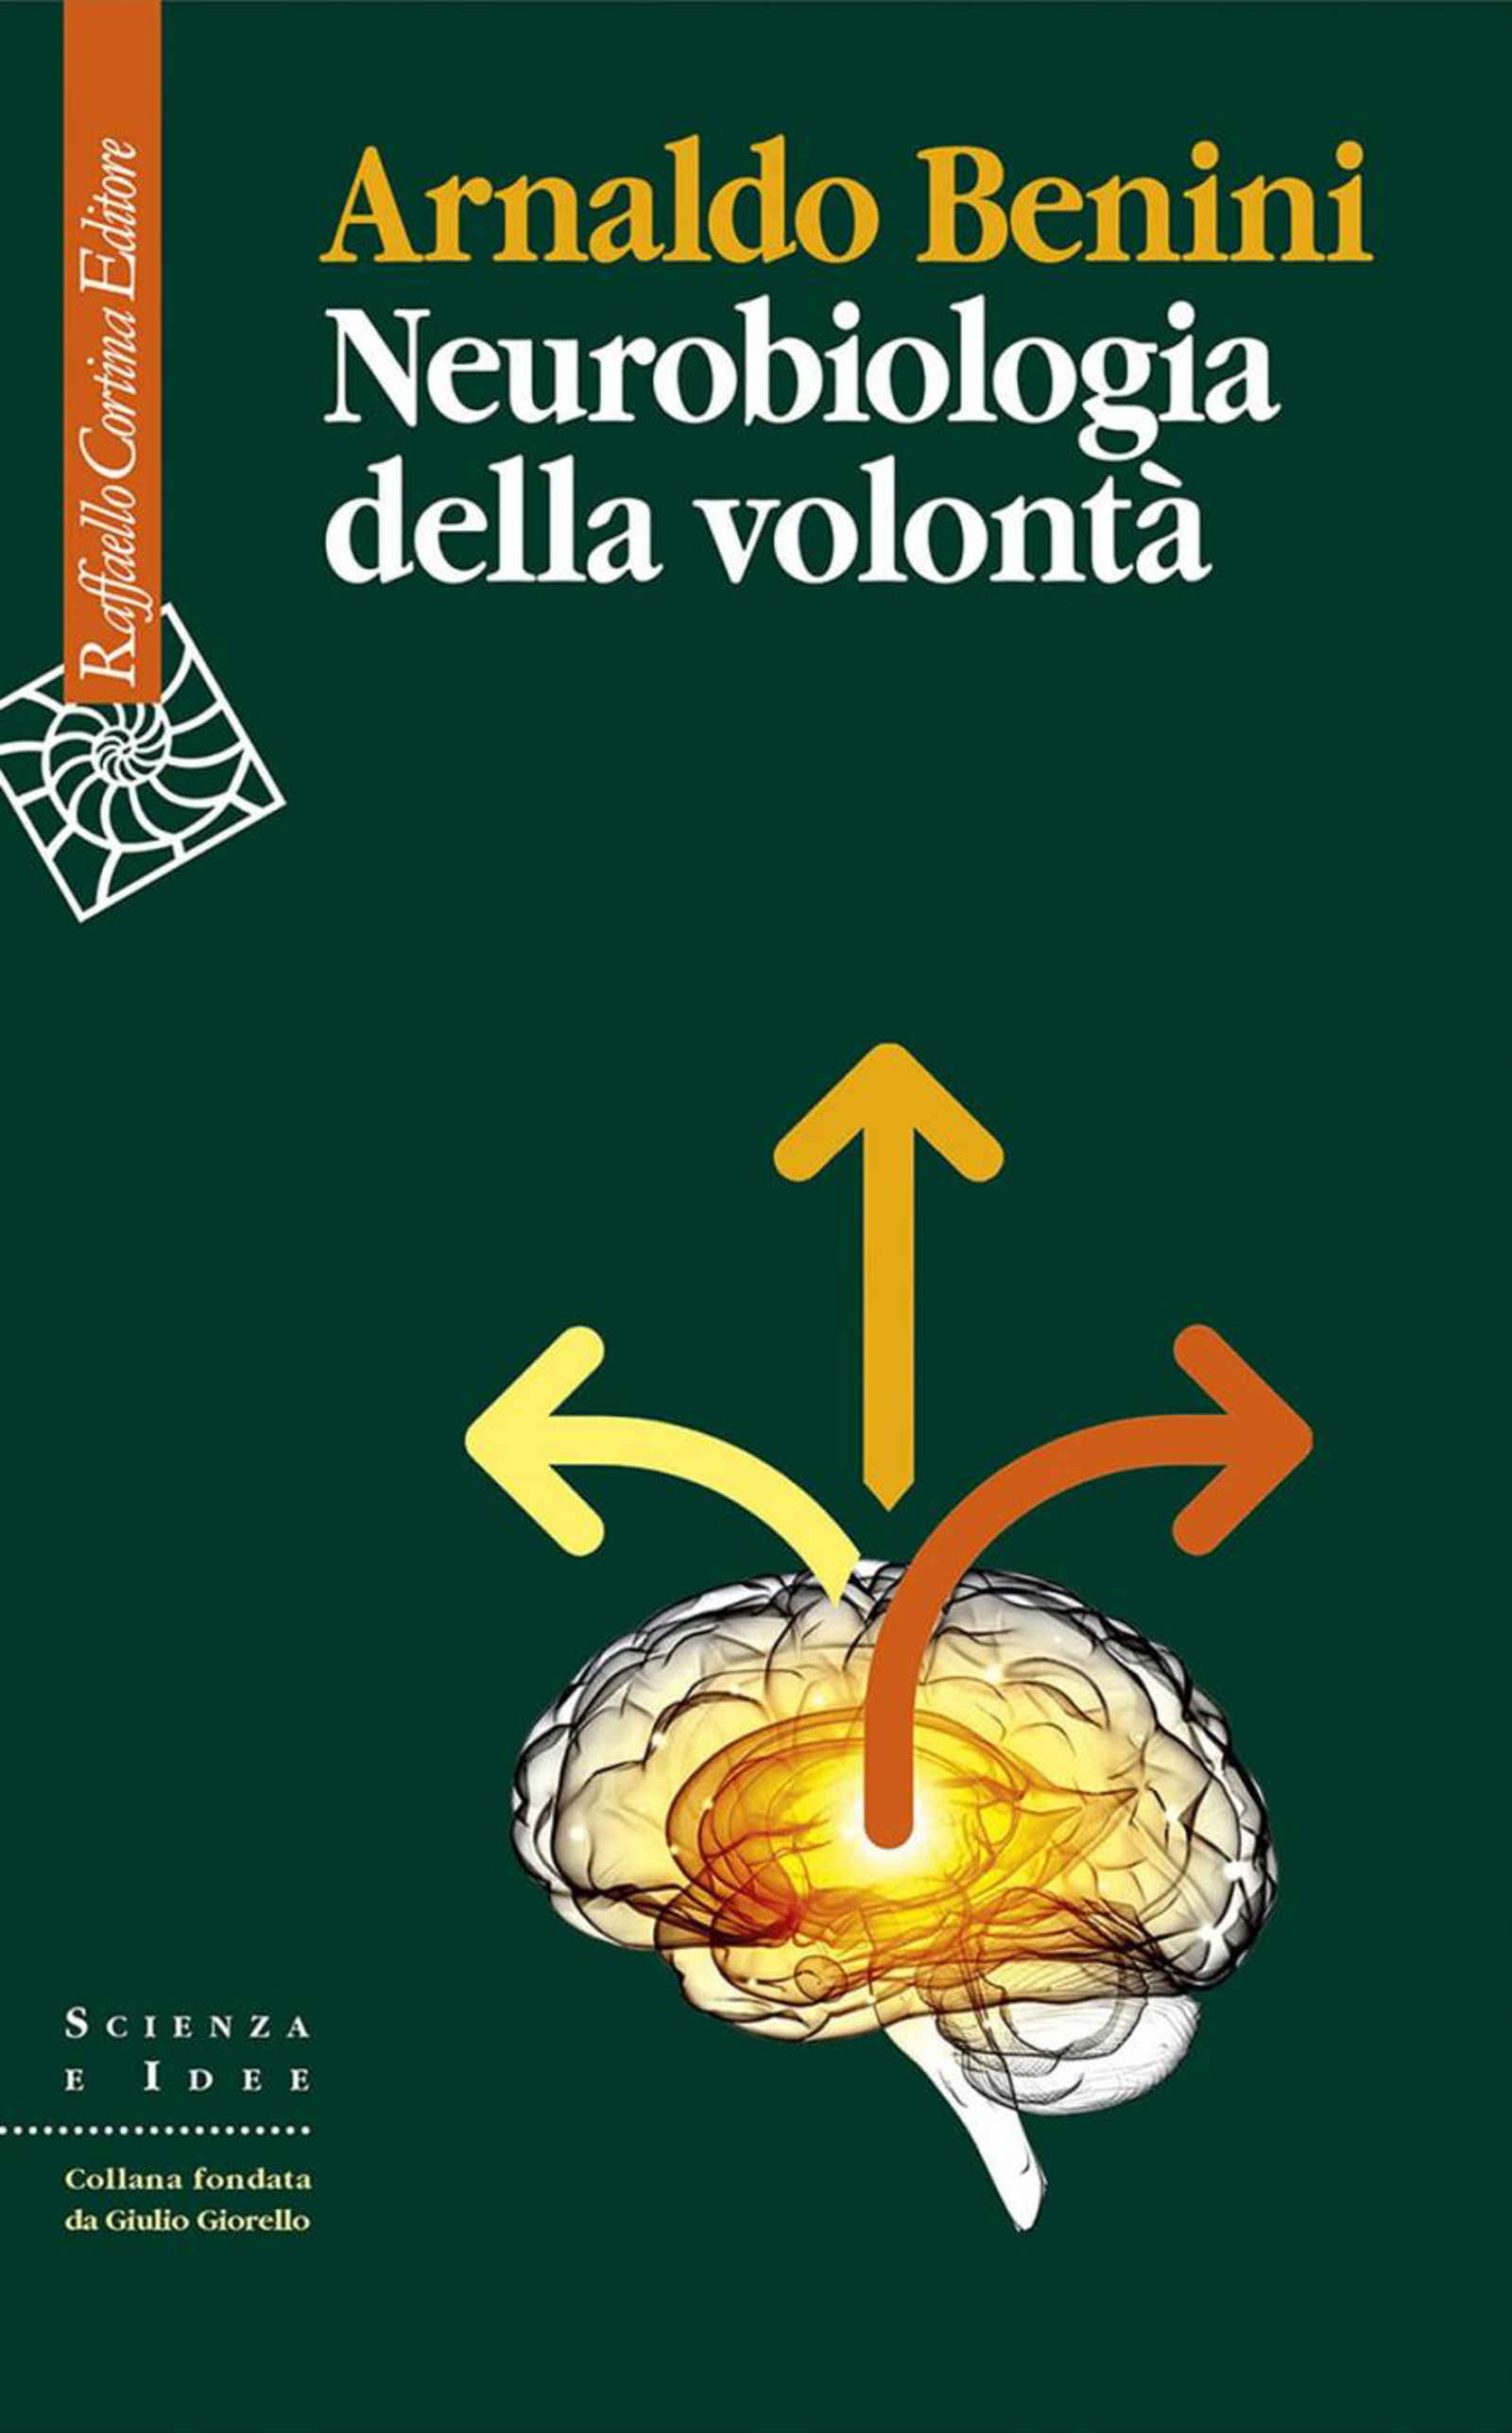 Neurobiologia della volonta 2022 di Arnaldo Benini Recensione del libro Featured